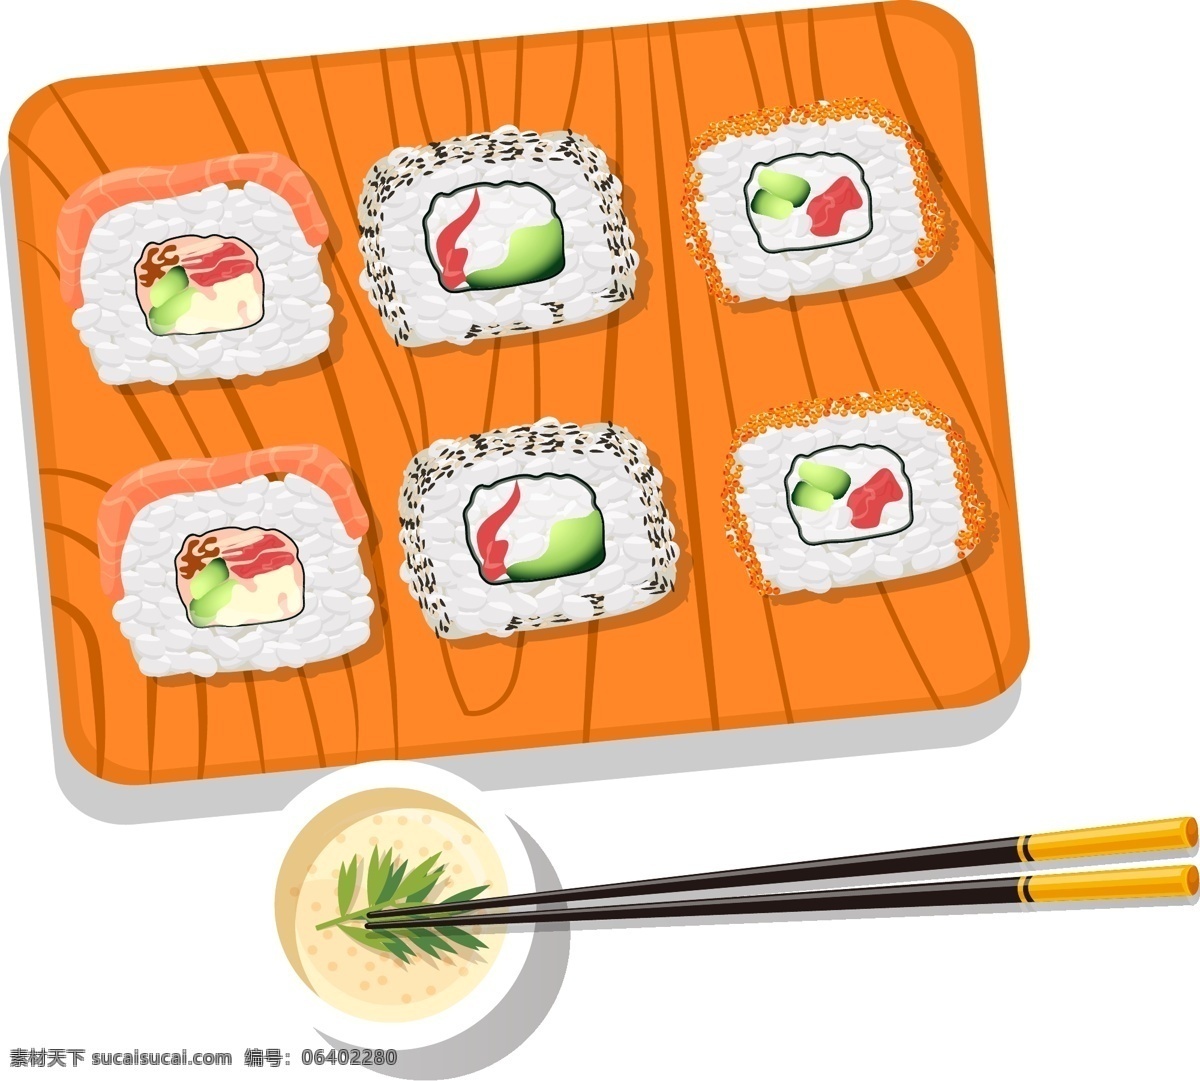 矢量 手绘 卡通 食物 寿司 刺身 日式 食物海报 芥末 手绘寿司 彩绘寿司 日式食物 寿司透明 手卷 卡通料理 卡通寿司 食物料理 三文鱼寿司 鱼子寿司